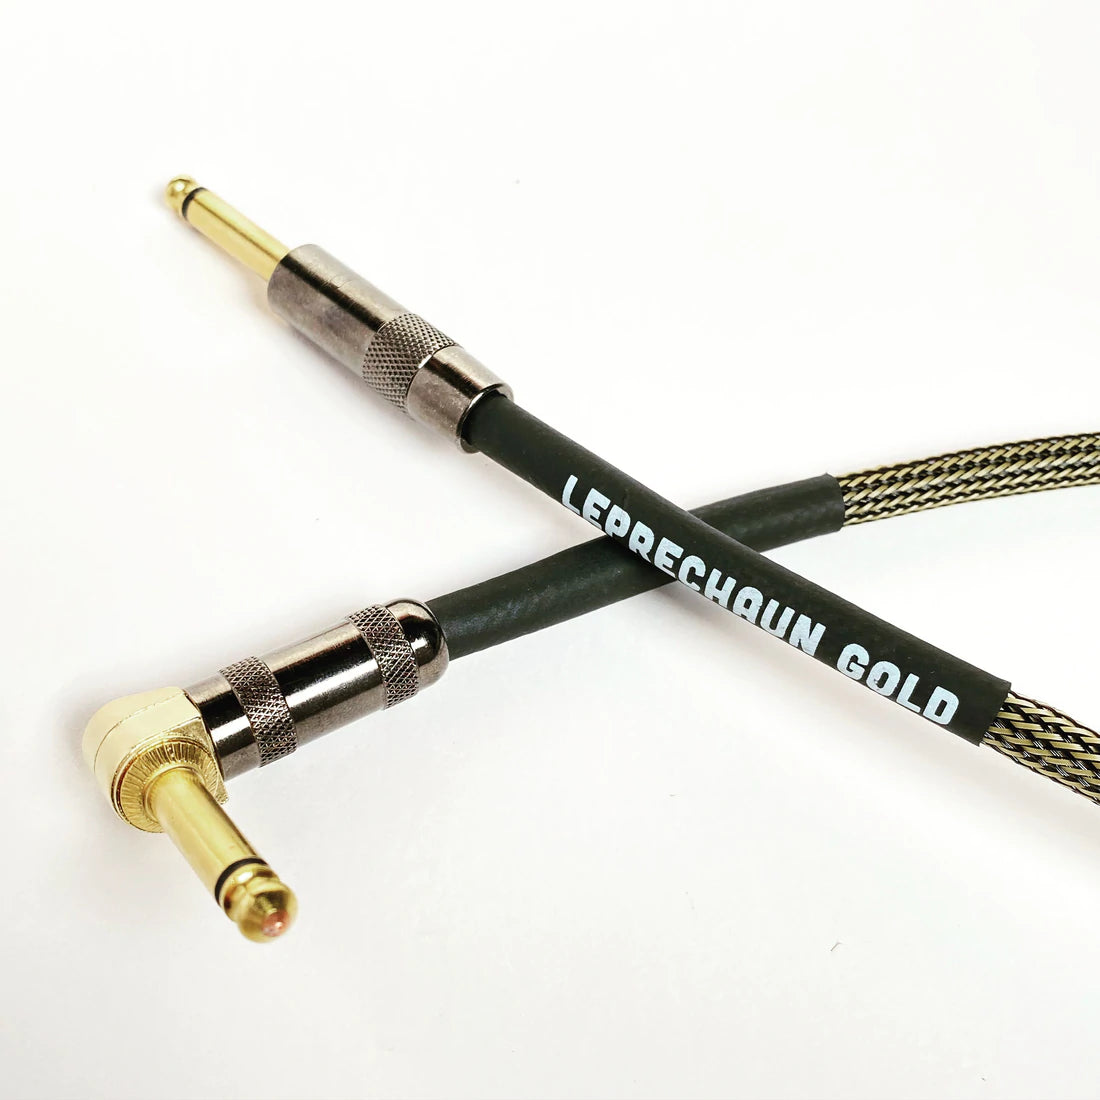 Leprechaun Gold Premium Instrument Cable Carbon Gold